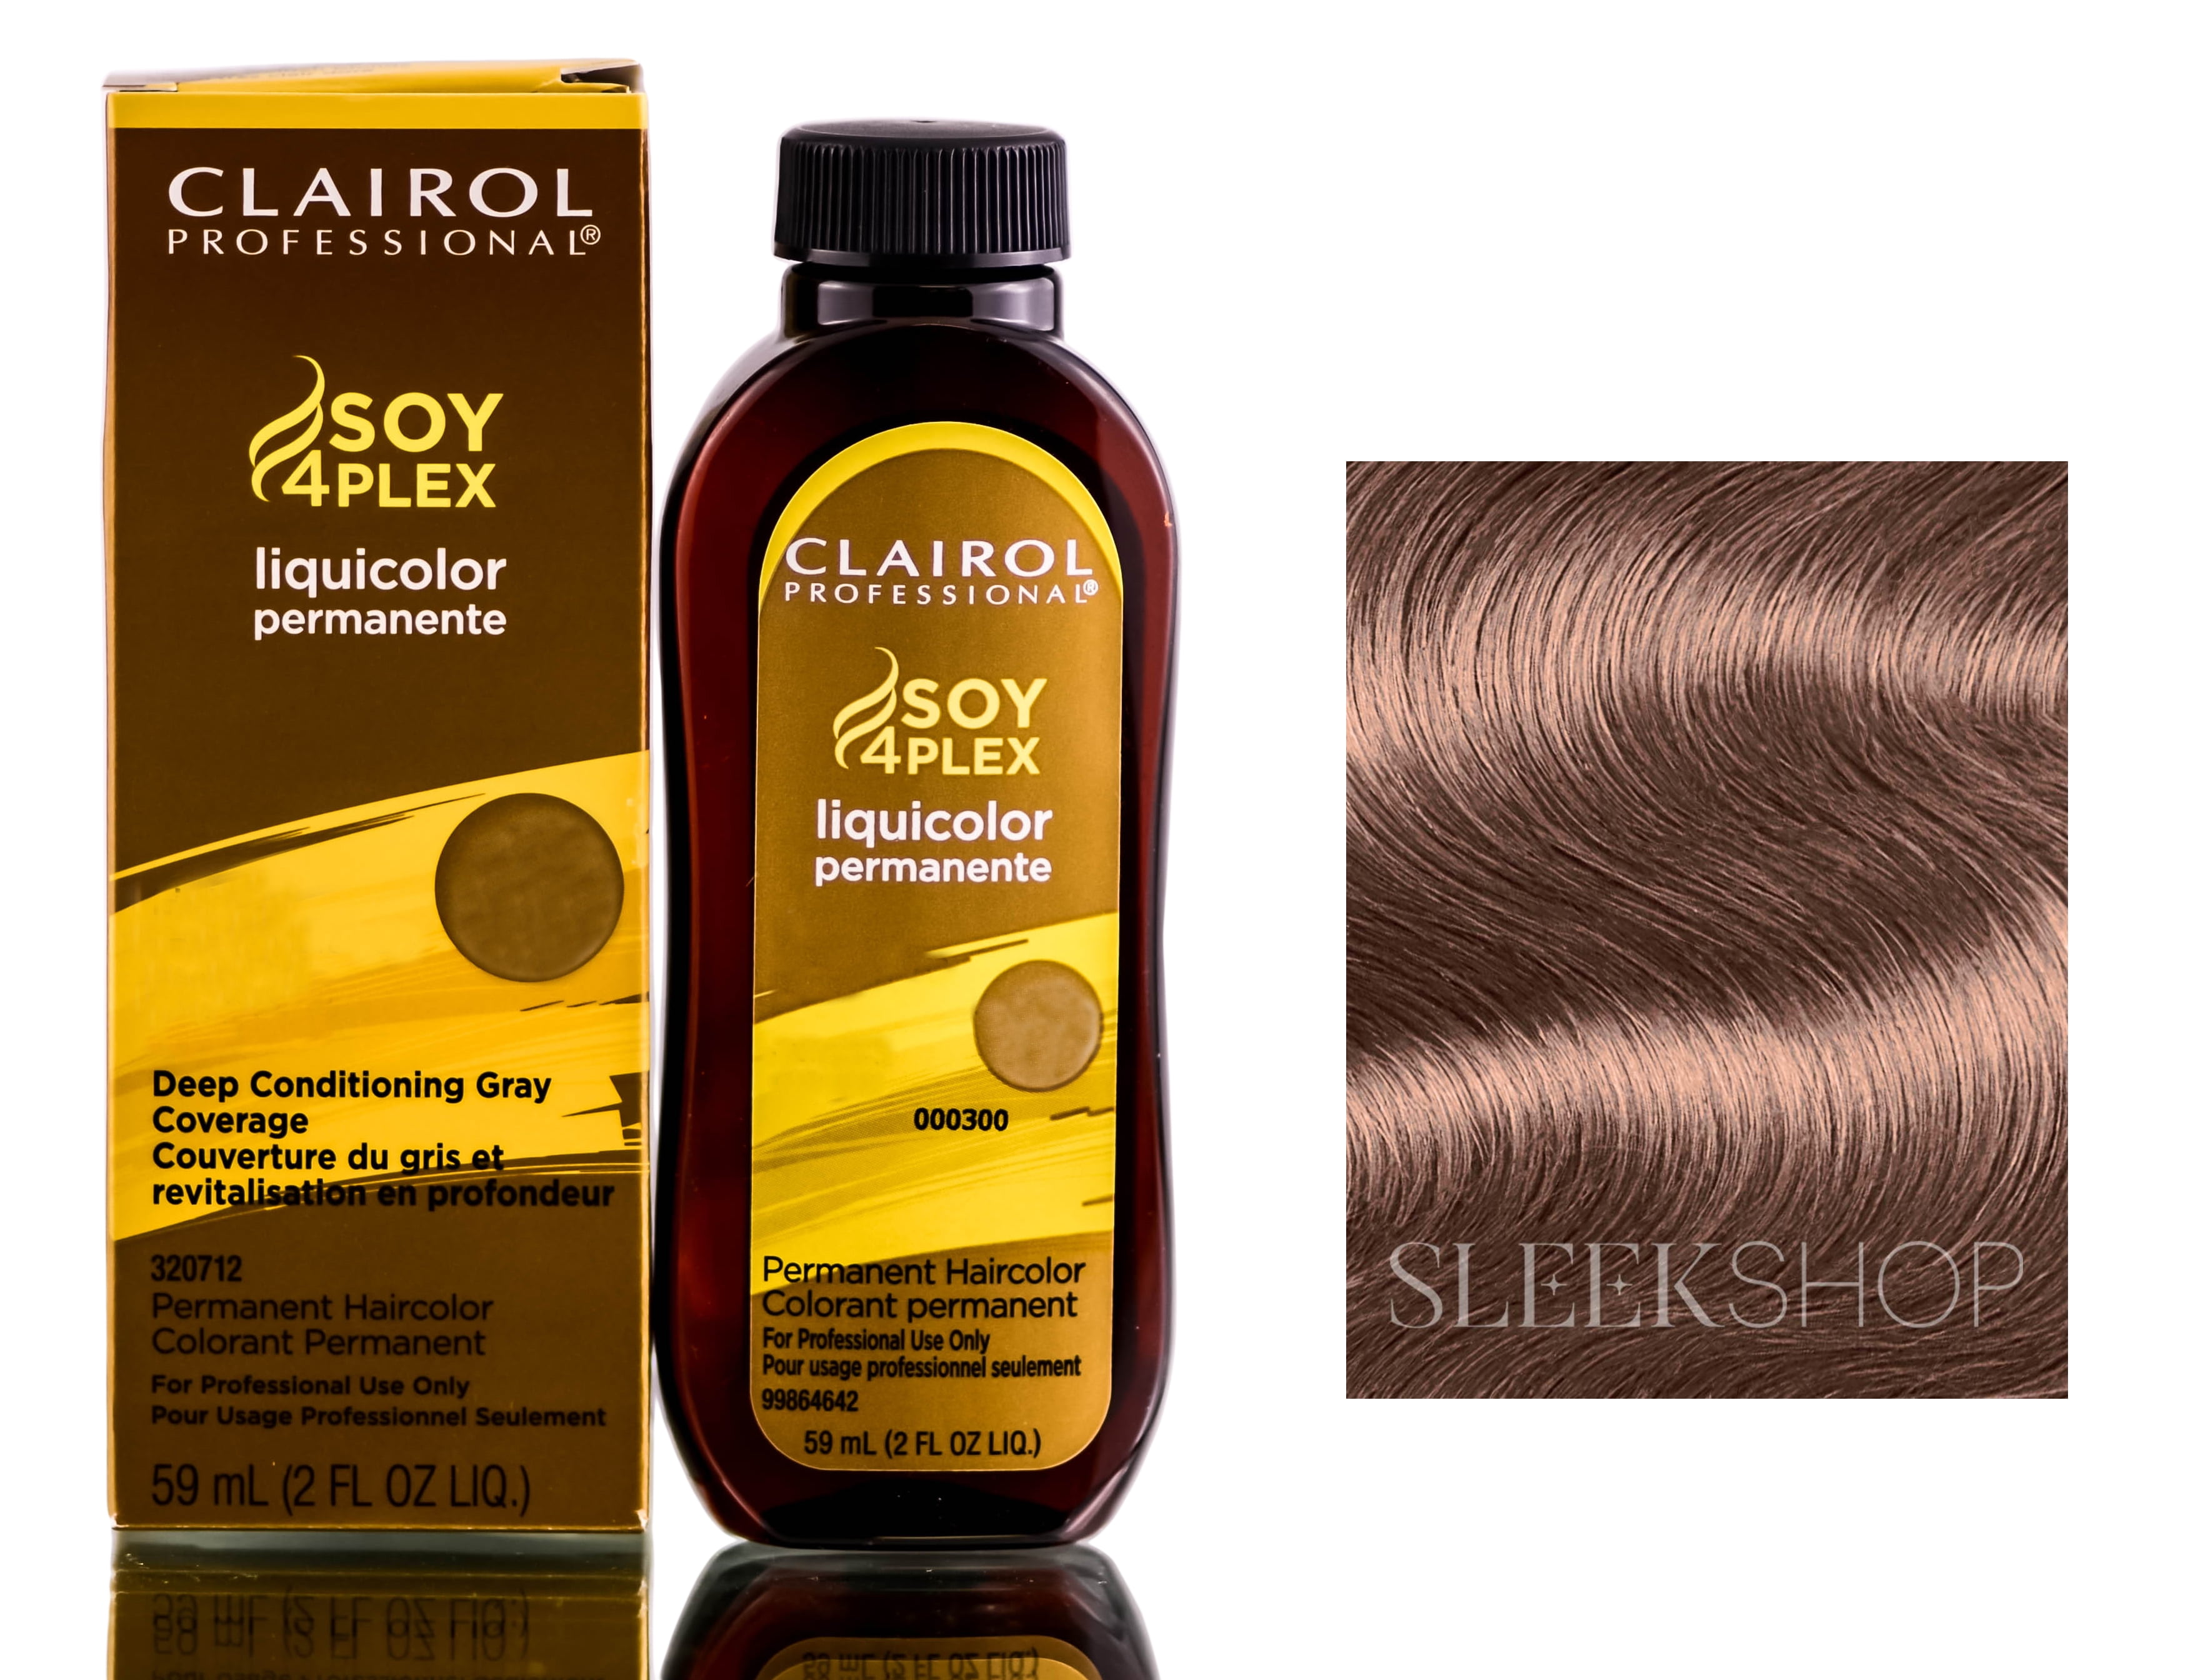 8. Clairol Professional Soy4Plex Liquicolor Permanent Hair Color, 9AA Lightest Ash Blonde - wide 2